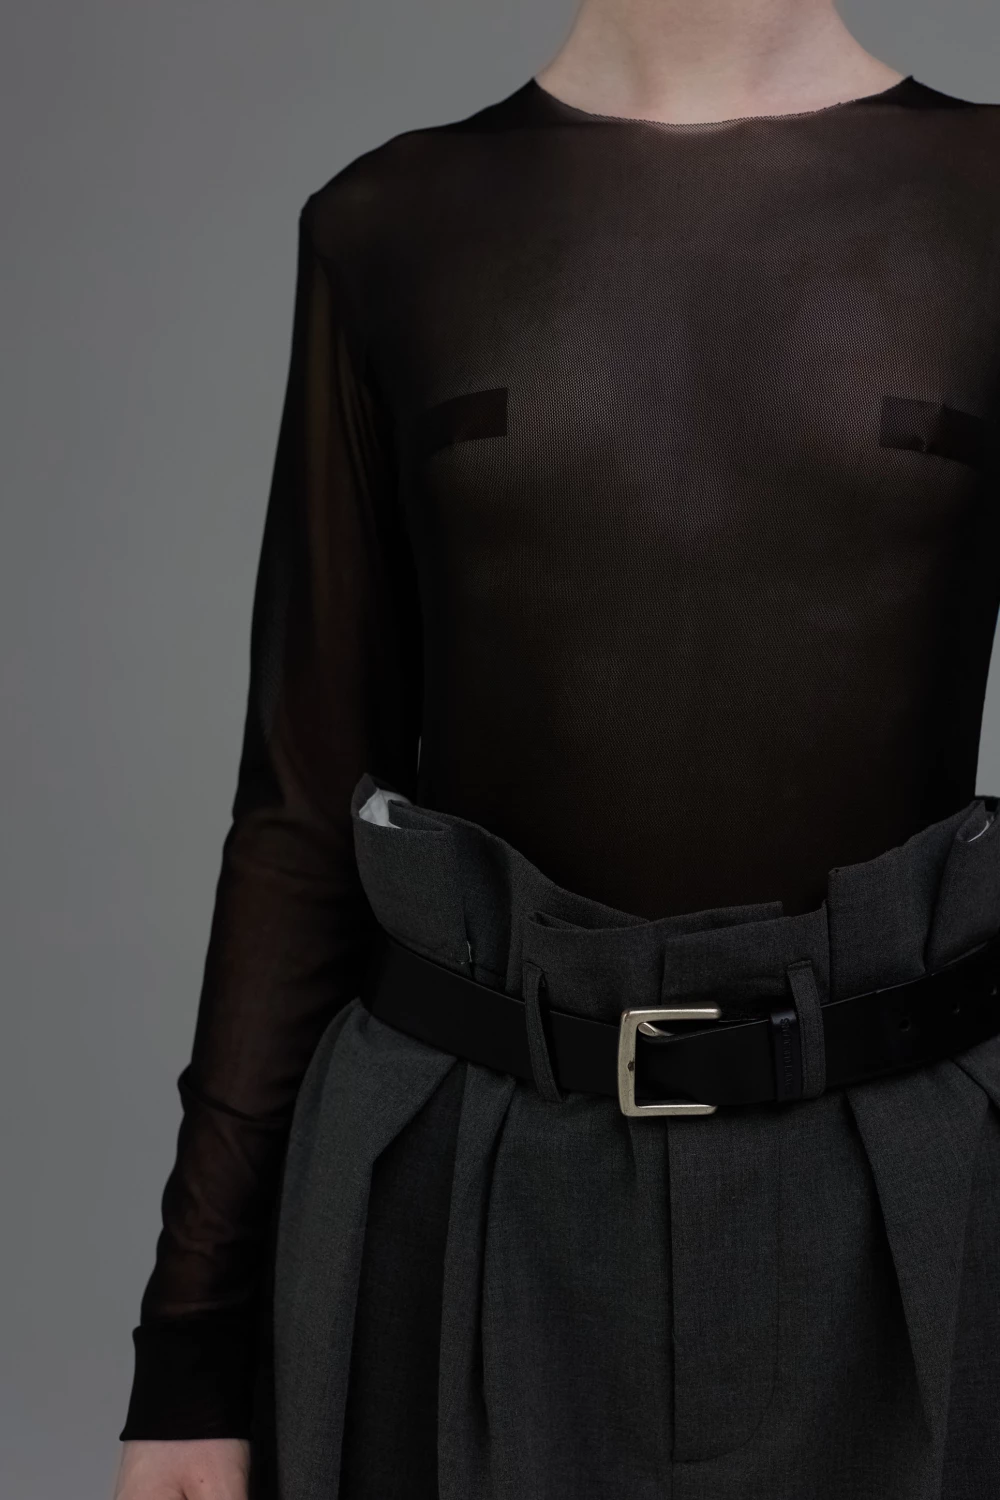 mesh bodysuit in black color